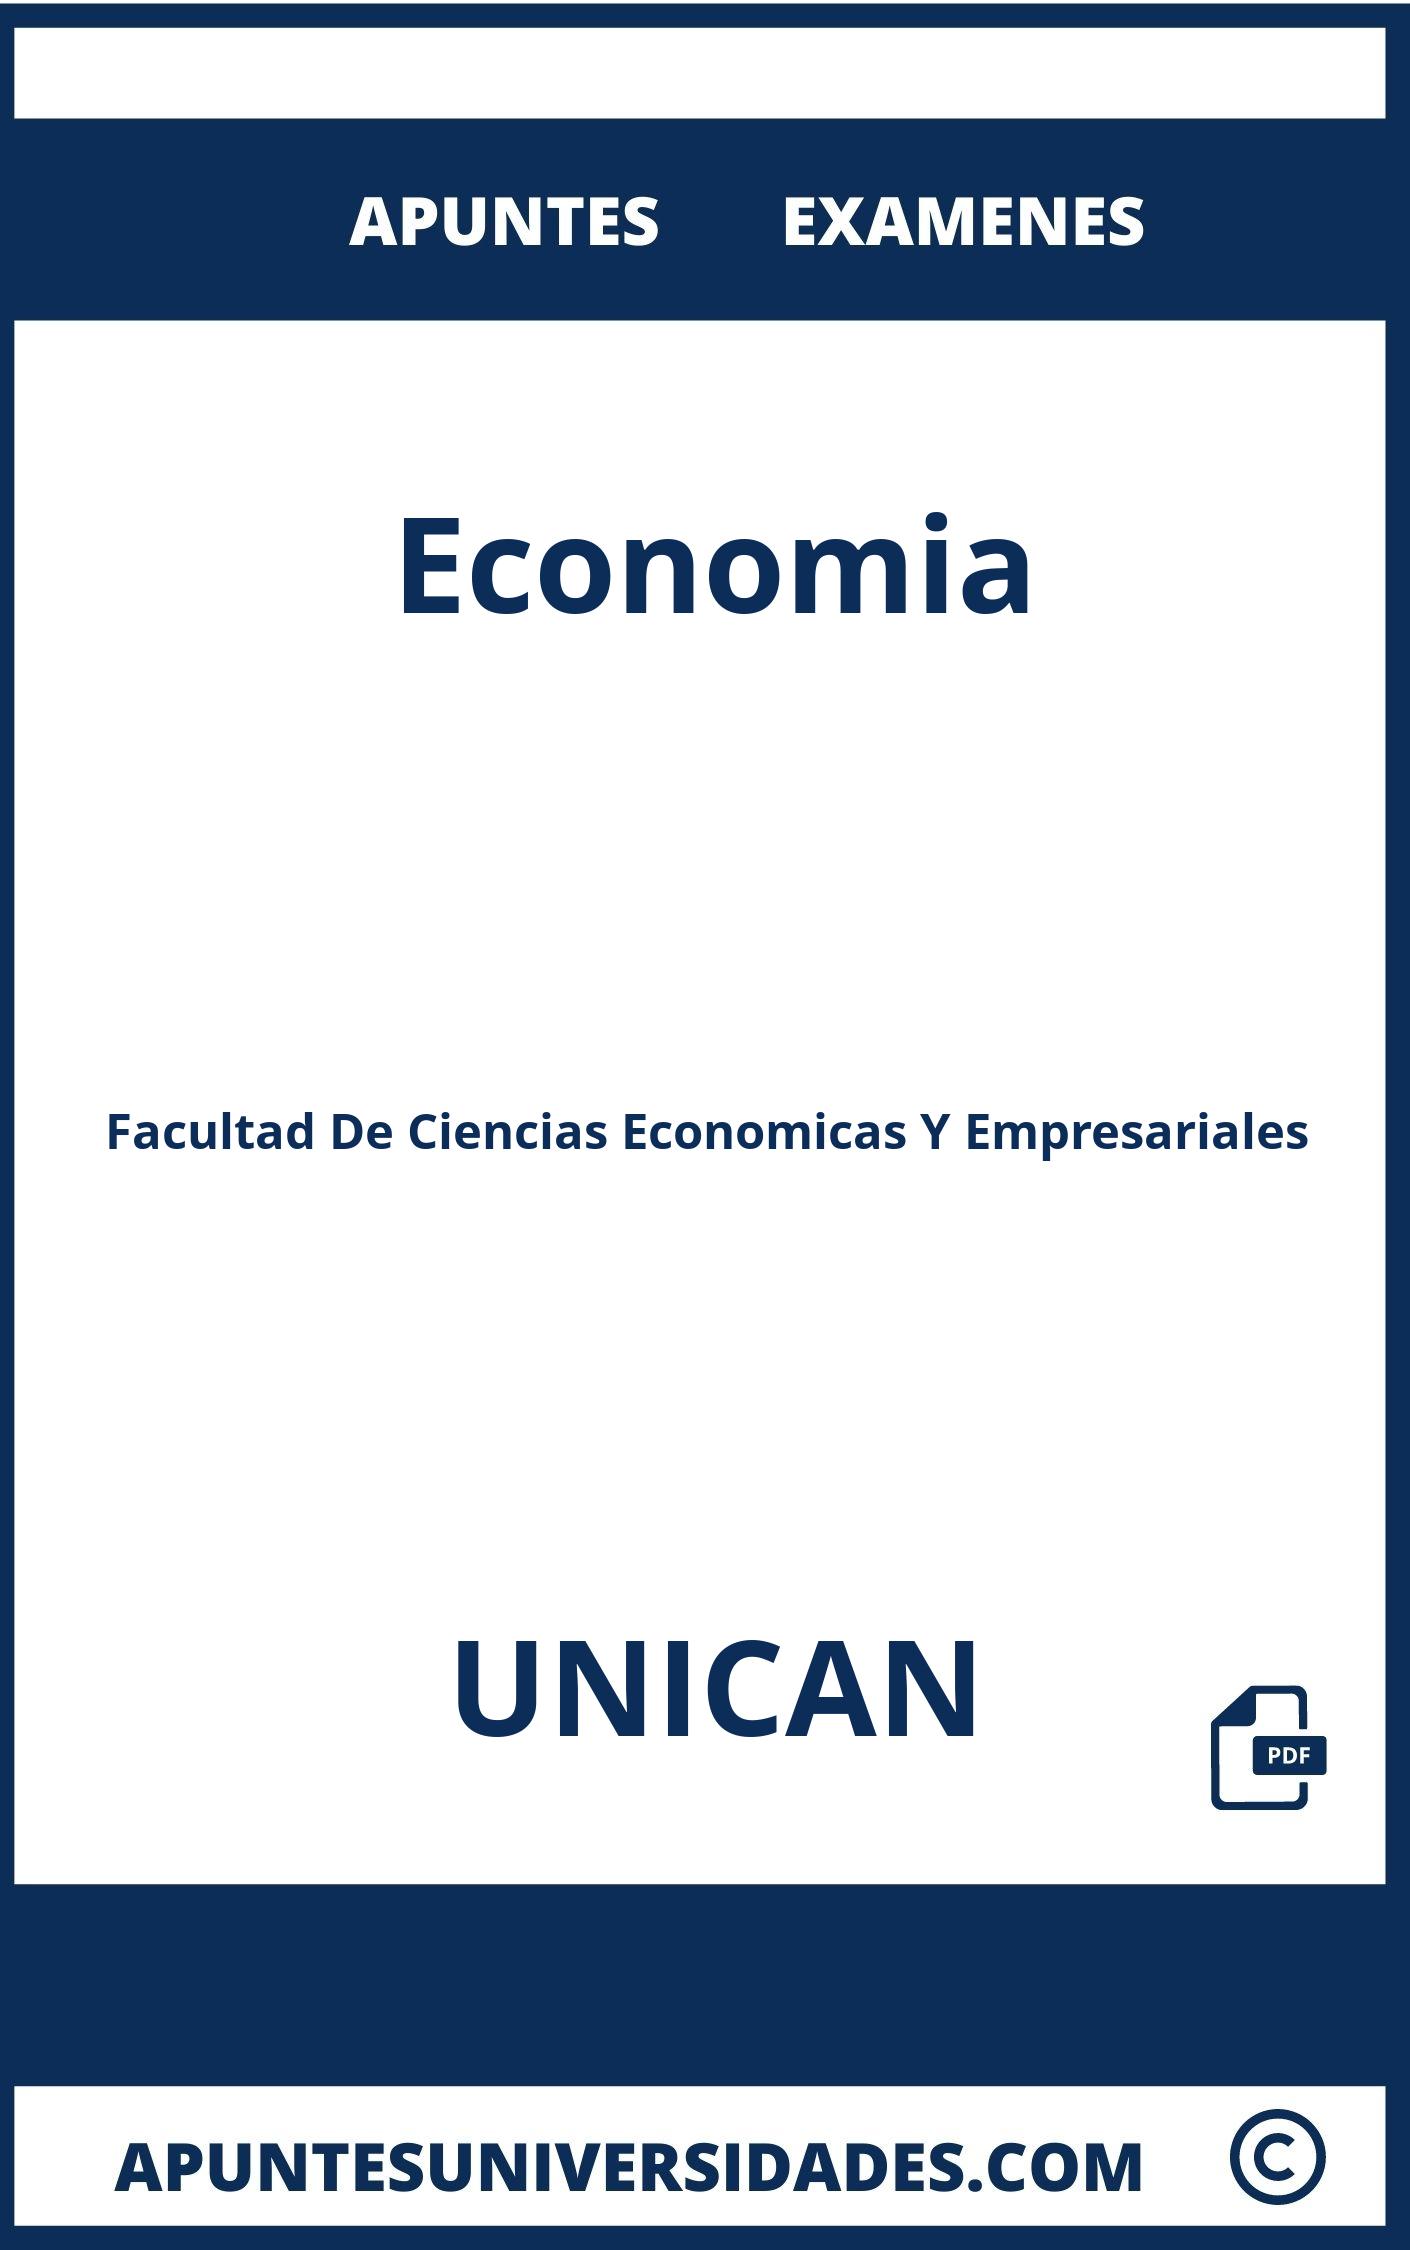 Apuntes y Examenes Economia UNICAN